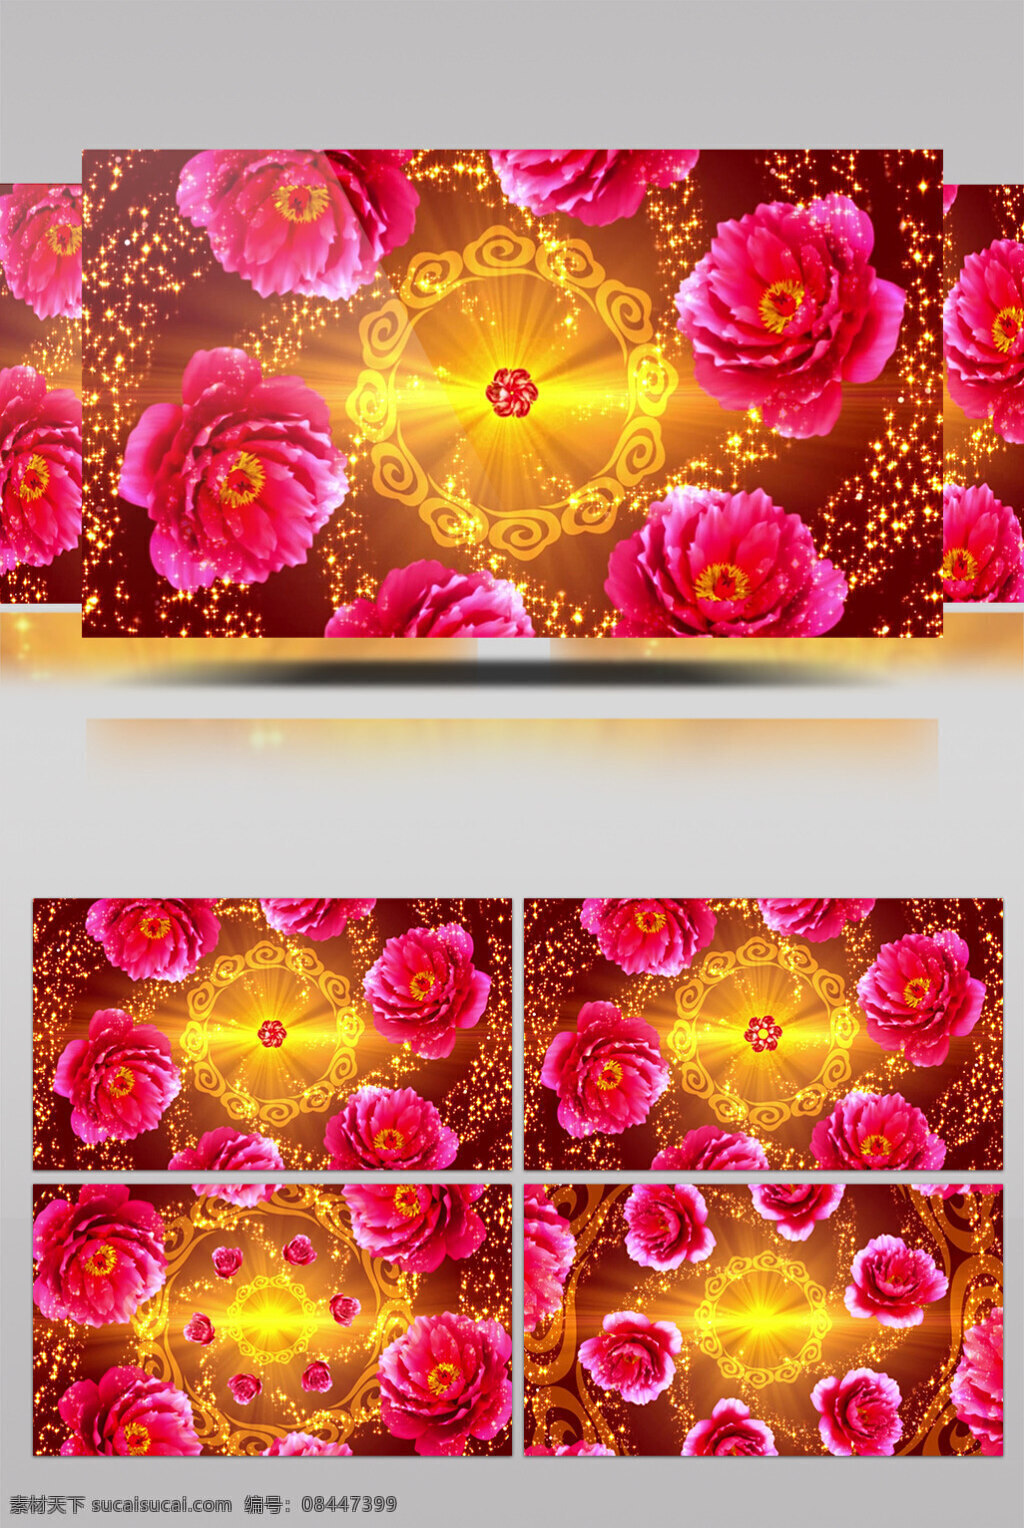 红黄色 花 视频 红黄色花朵 唯美花圈 生活实用 节目使用 实用背景素材 舞台背景素材